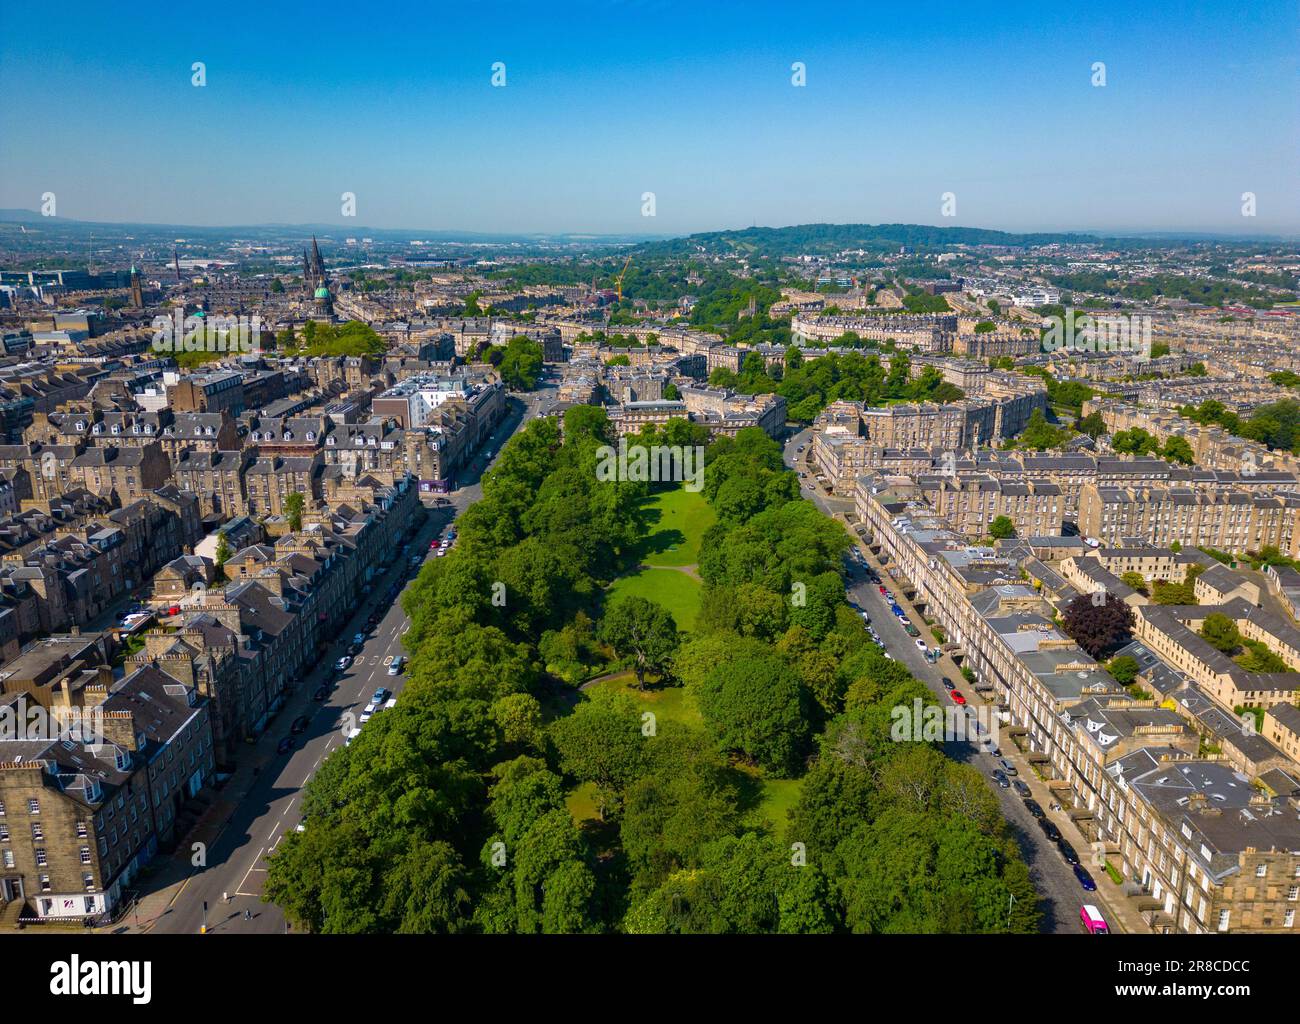 Vue aérienne de la Nouvelle ville, site classé au patrimoine mondial de l'UNESCO à Édimbourg, en Écosse, au Royaume-Uni Banque D'Images